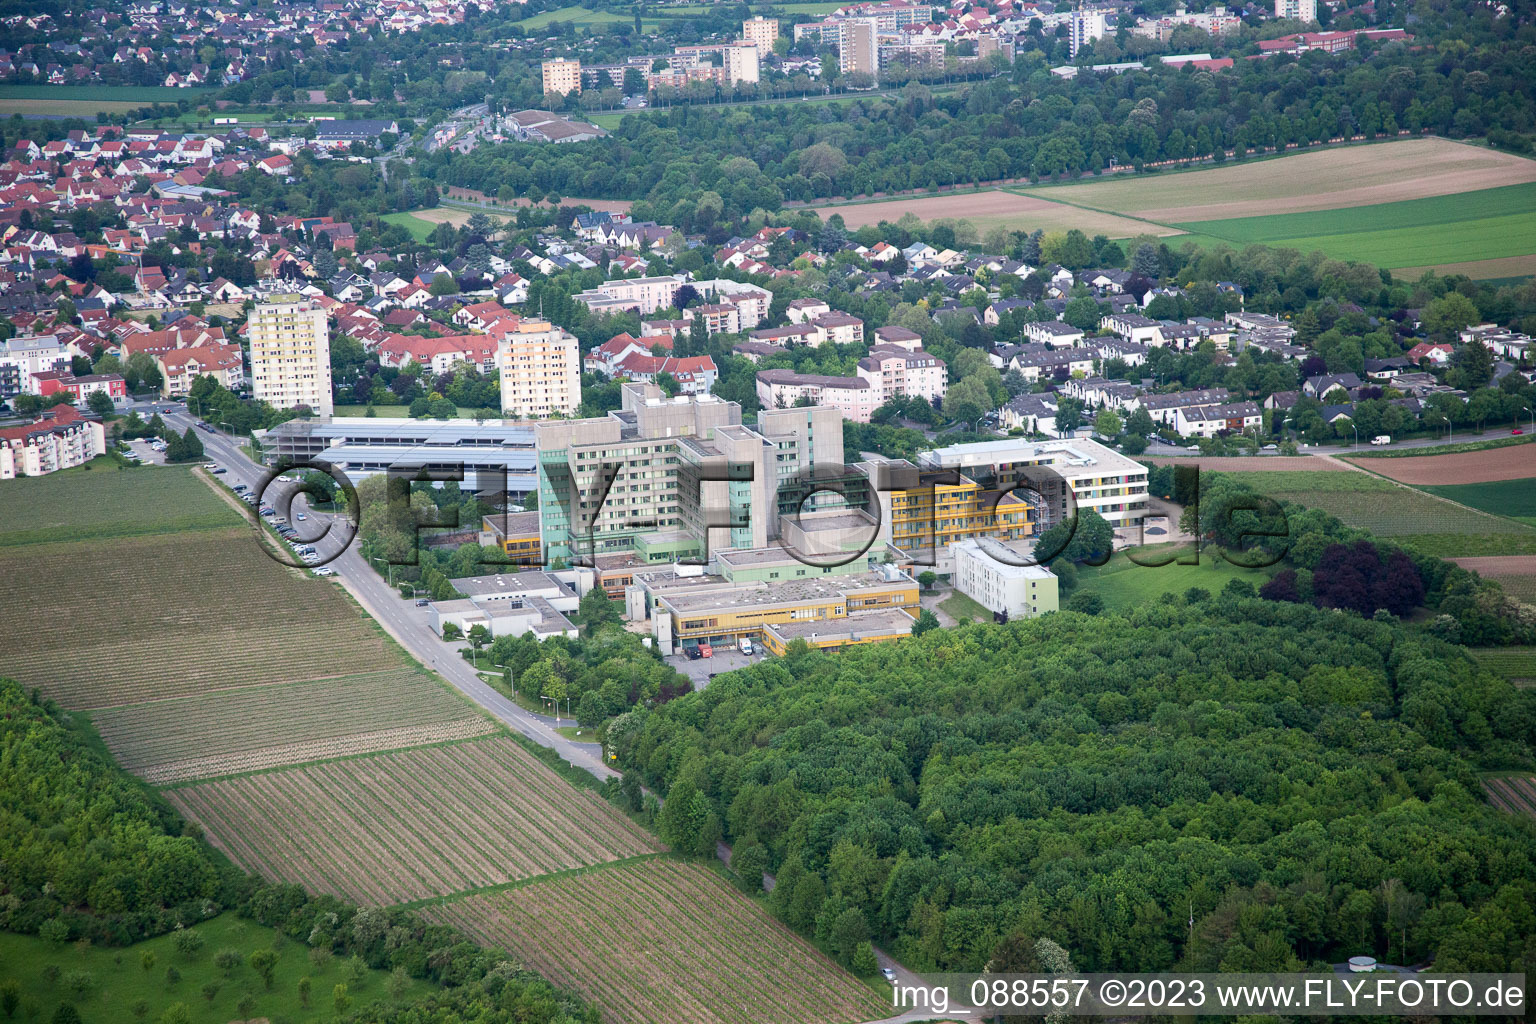 Klinikum im Ortsteil Herrnsheim in Worms im Bundesland Rheinland-Pfalz, Deutschland